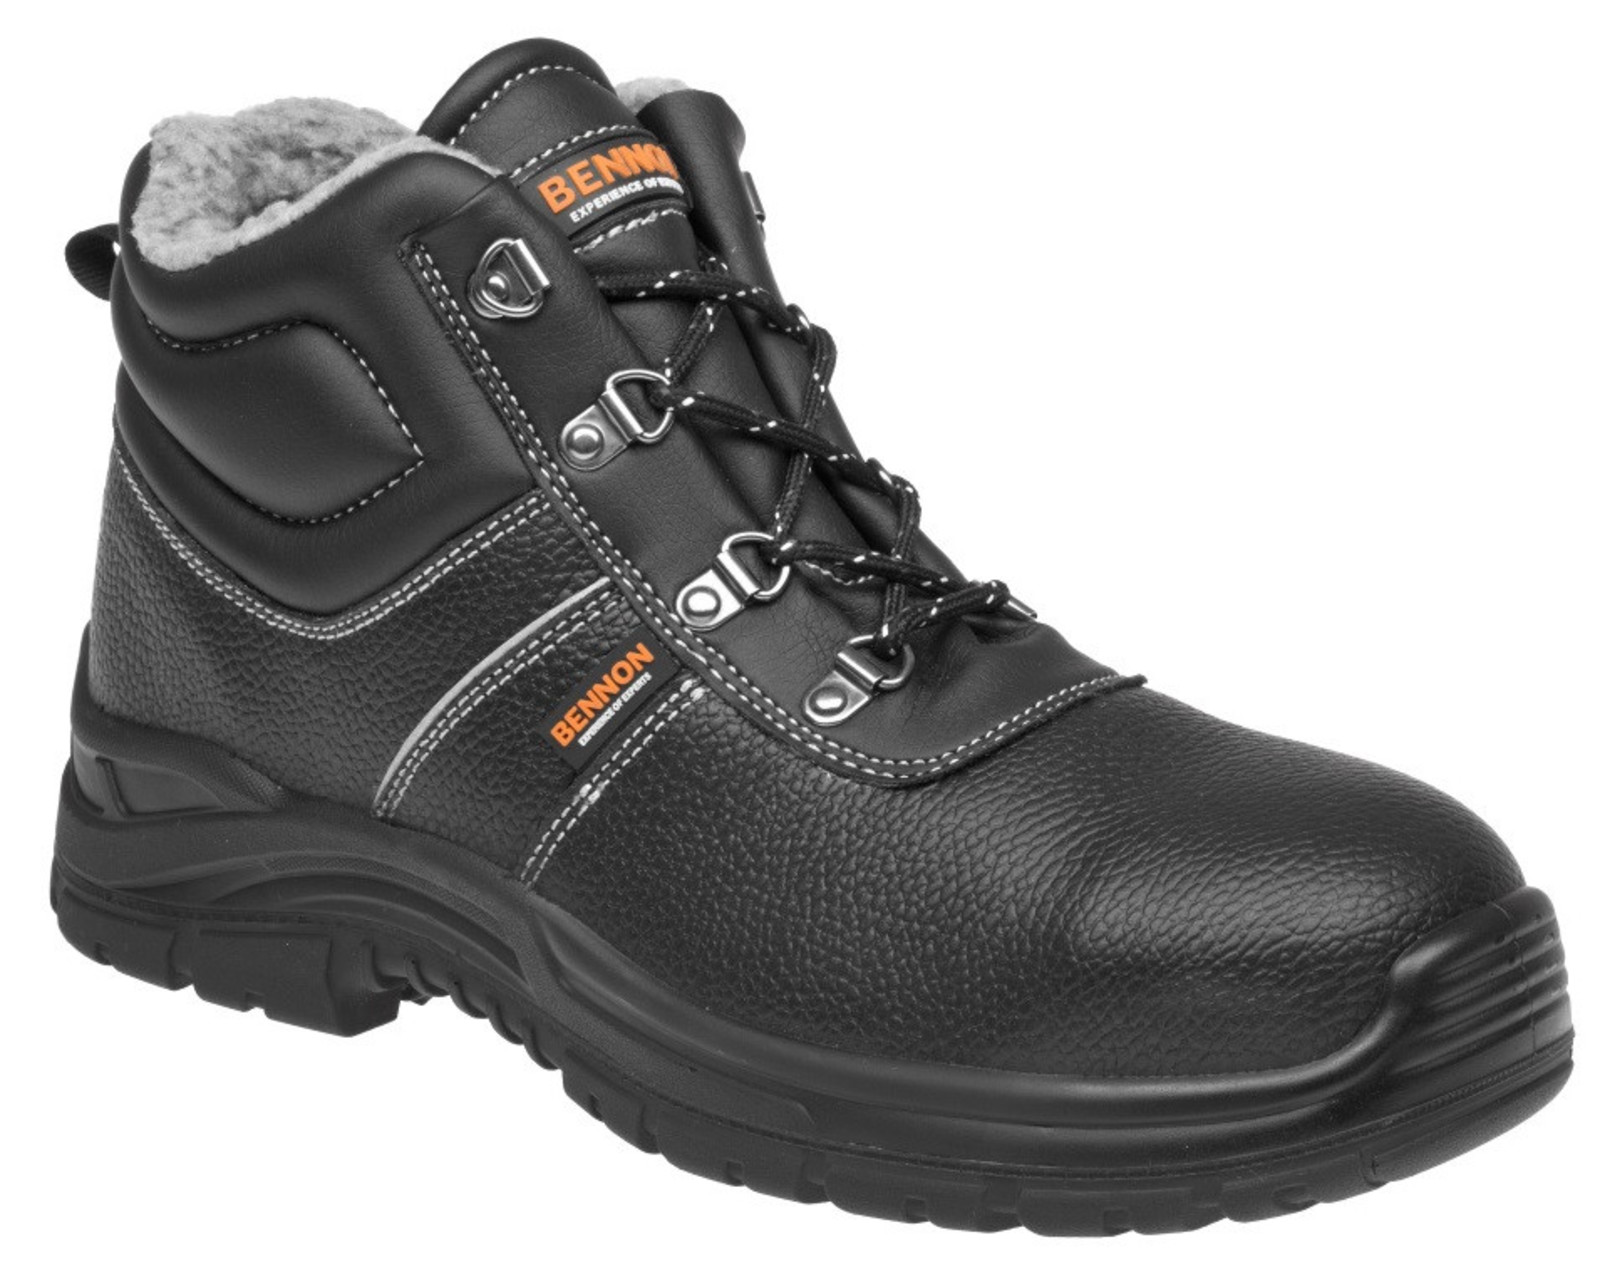 Zimná bezpečnostná obuv Bennon Basic S3 - veľkosť: 41, farba: čierna